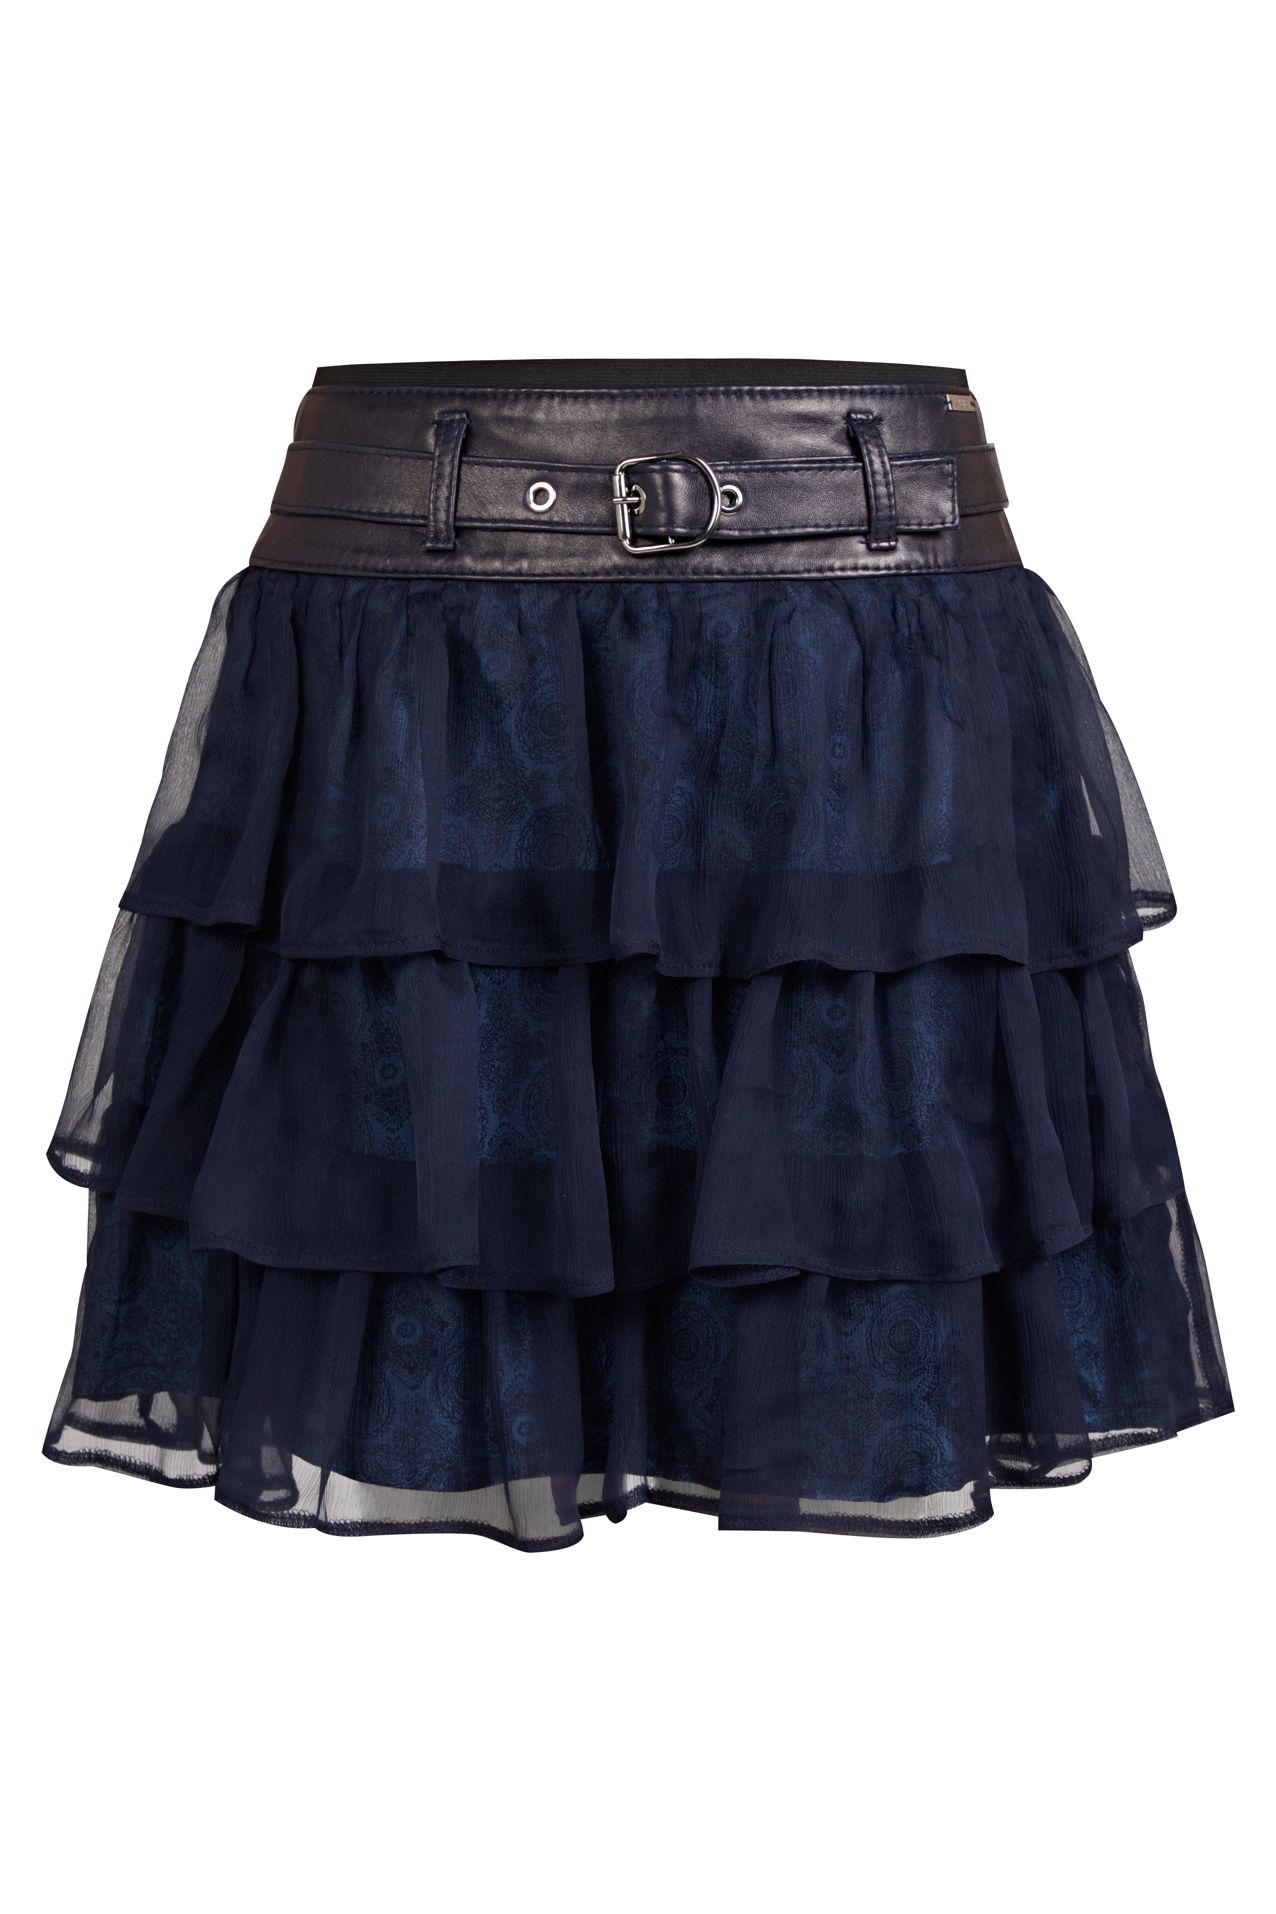 silk skirt with frills and leather yoke, skirt with silk frills, skirt navy blue, skirt navy blue silk, silk with leather yoke and silk frills, polish designer skirt, made in poland silk skirt